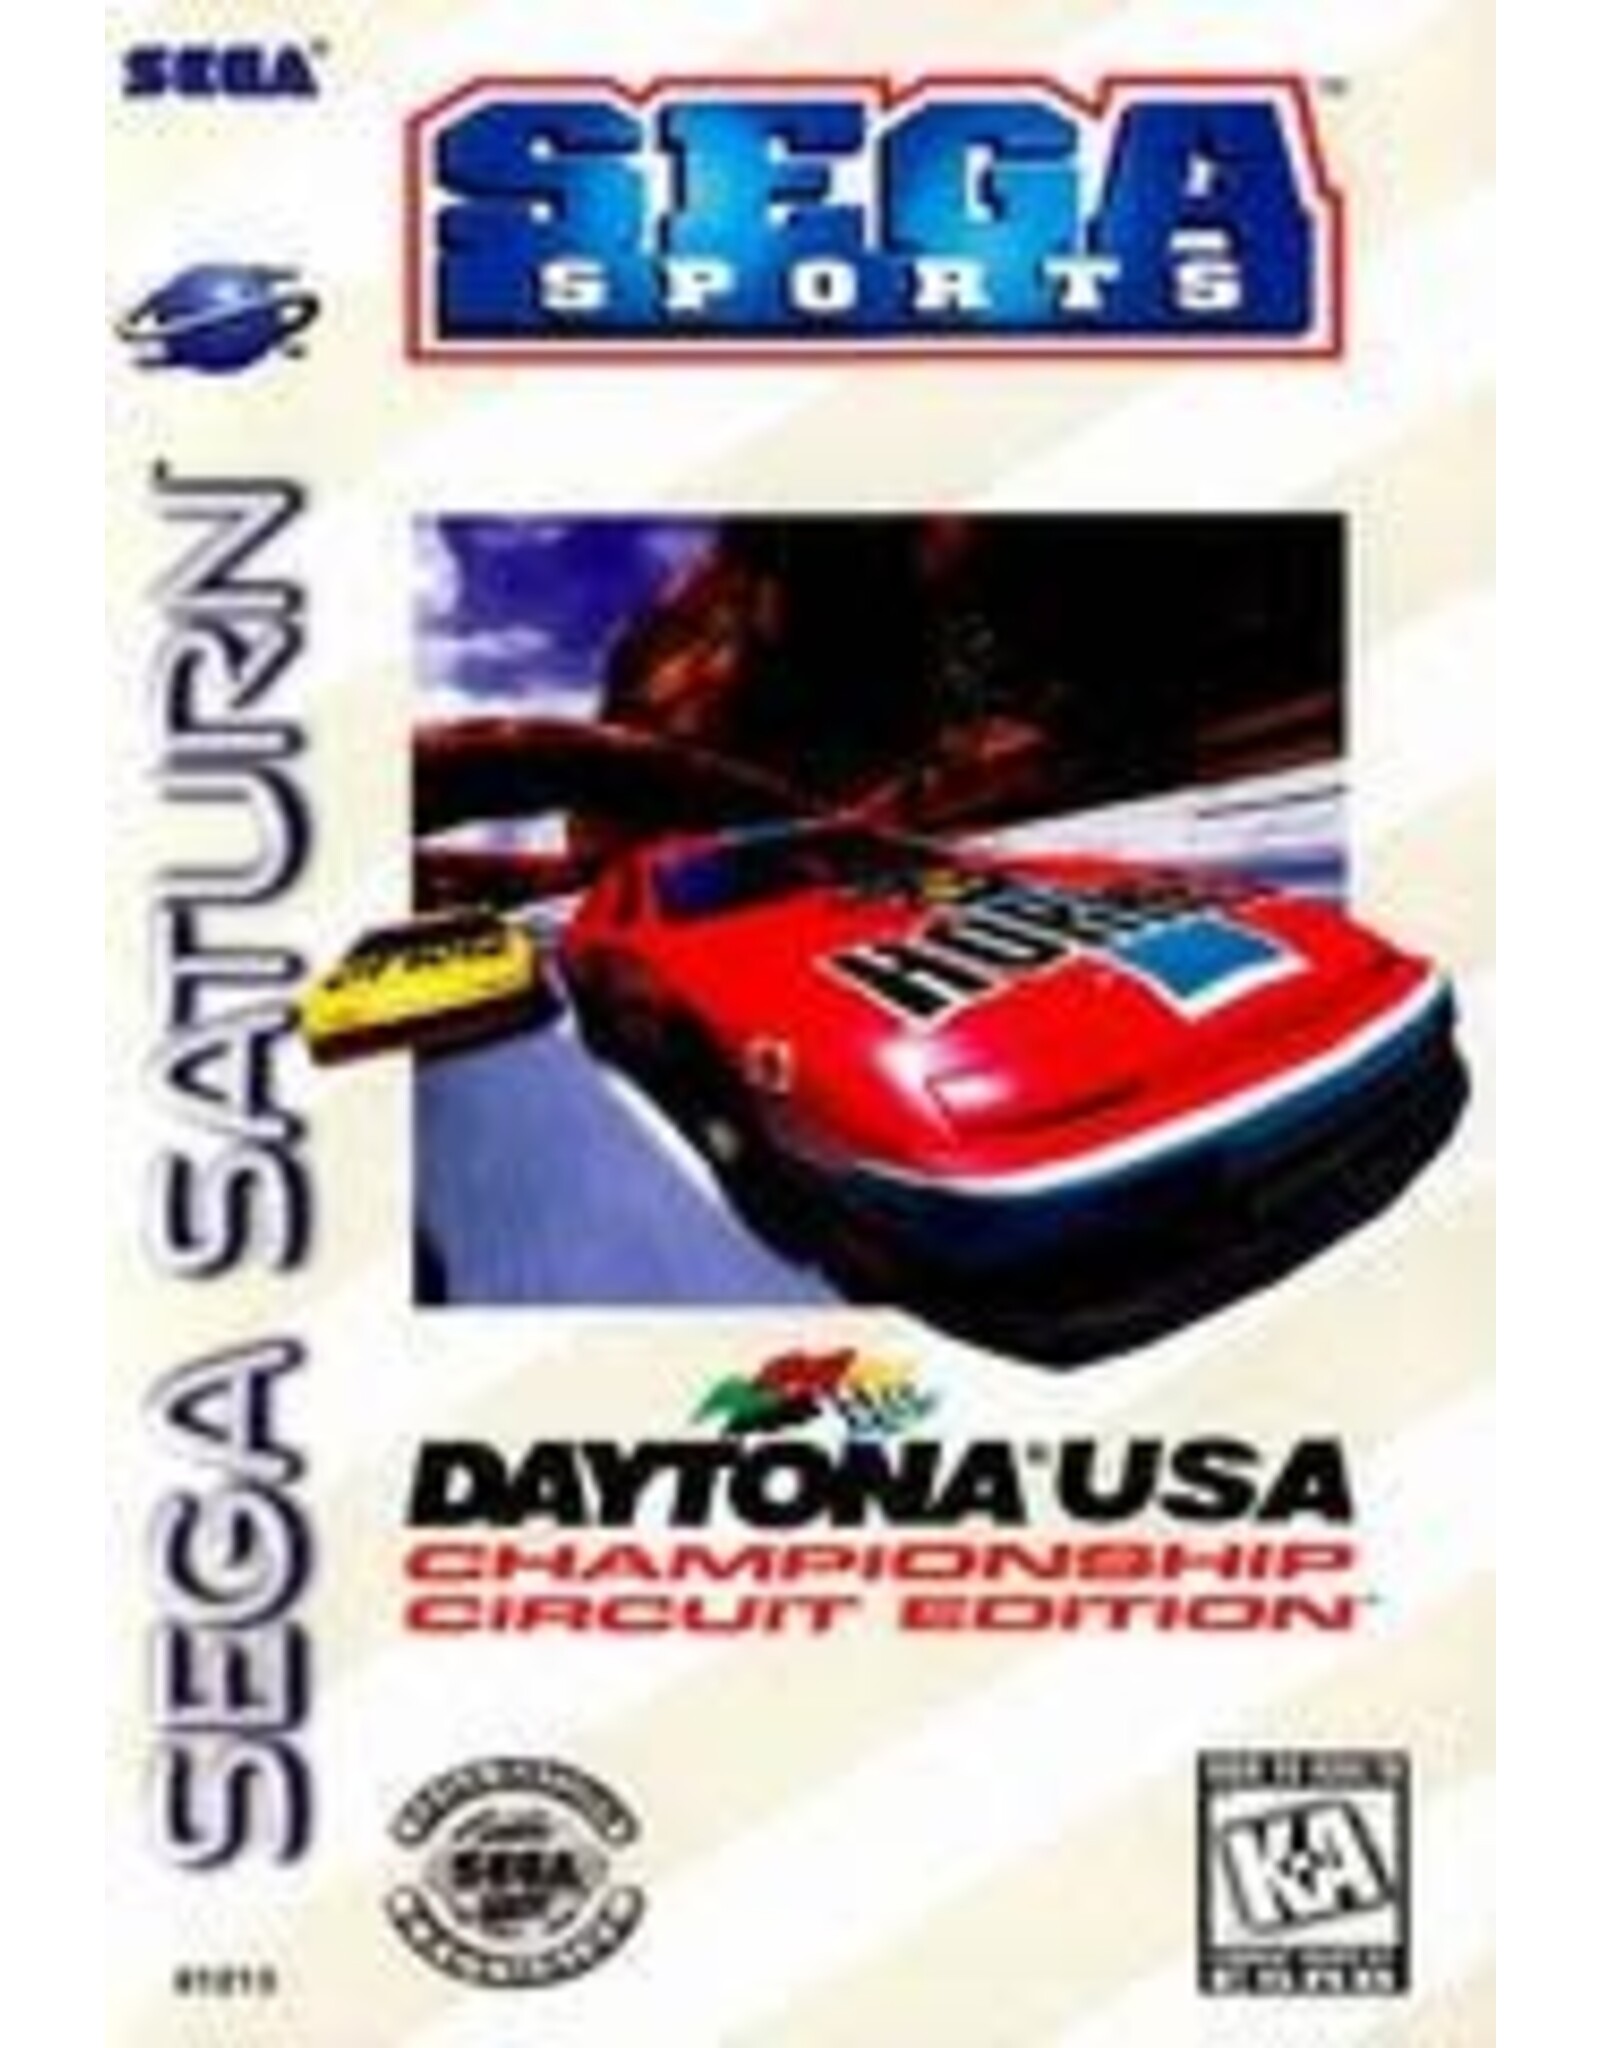 Sega Saturn Daytona USA Championship Circuit Edition (CiB, Damaged Manual)